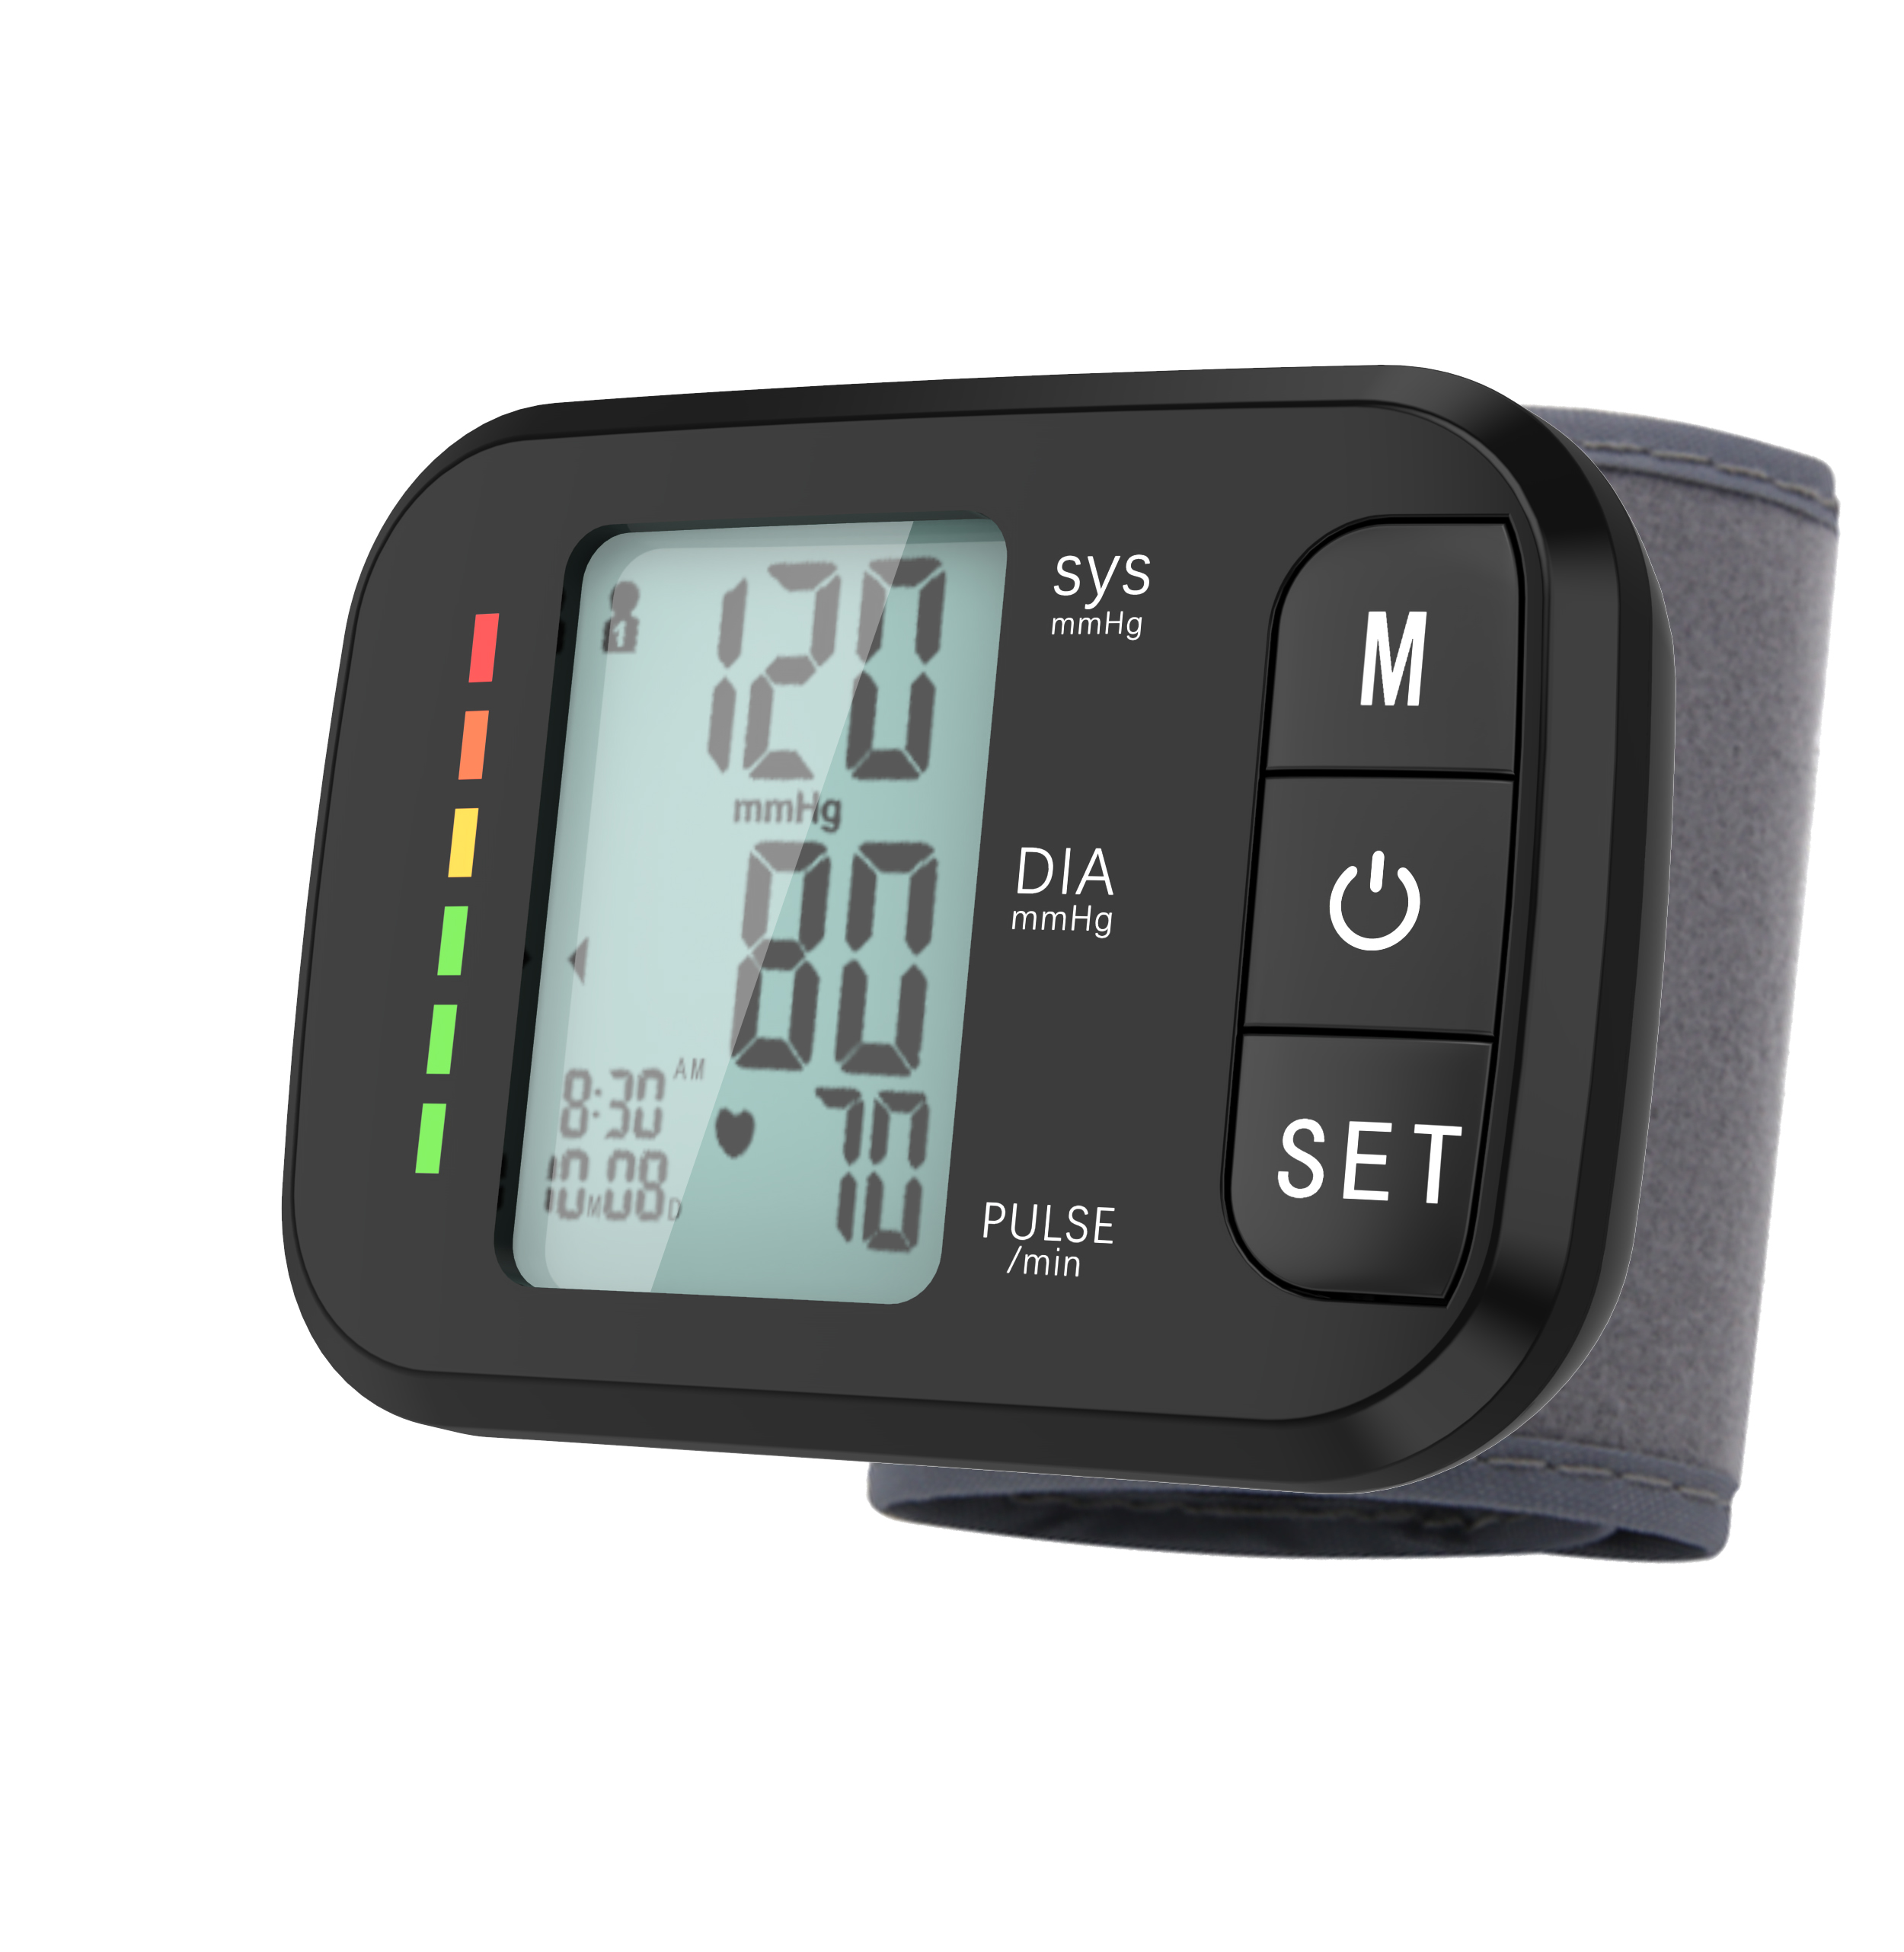 ဘာသာစကား ဒစ်ဂျစ်တယ် Sphygmomanometer Wrist Blood Pressure Monitor ကို စိတ်ကြိုက်လုပ်ပါ။